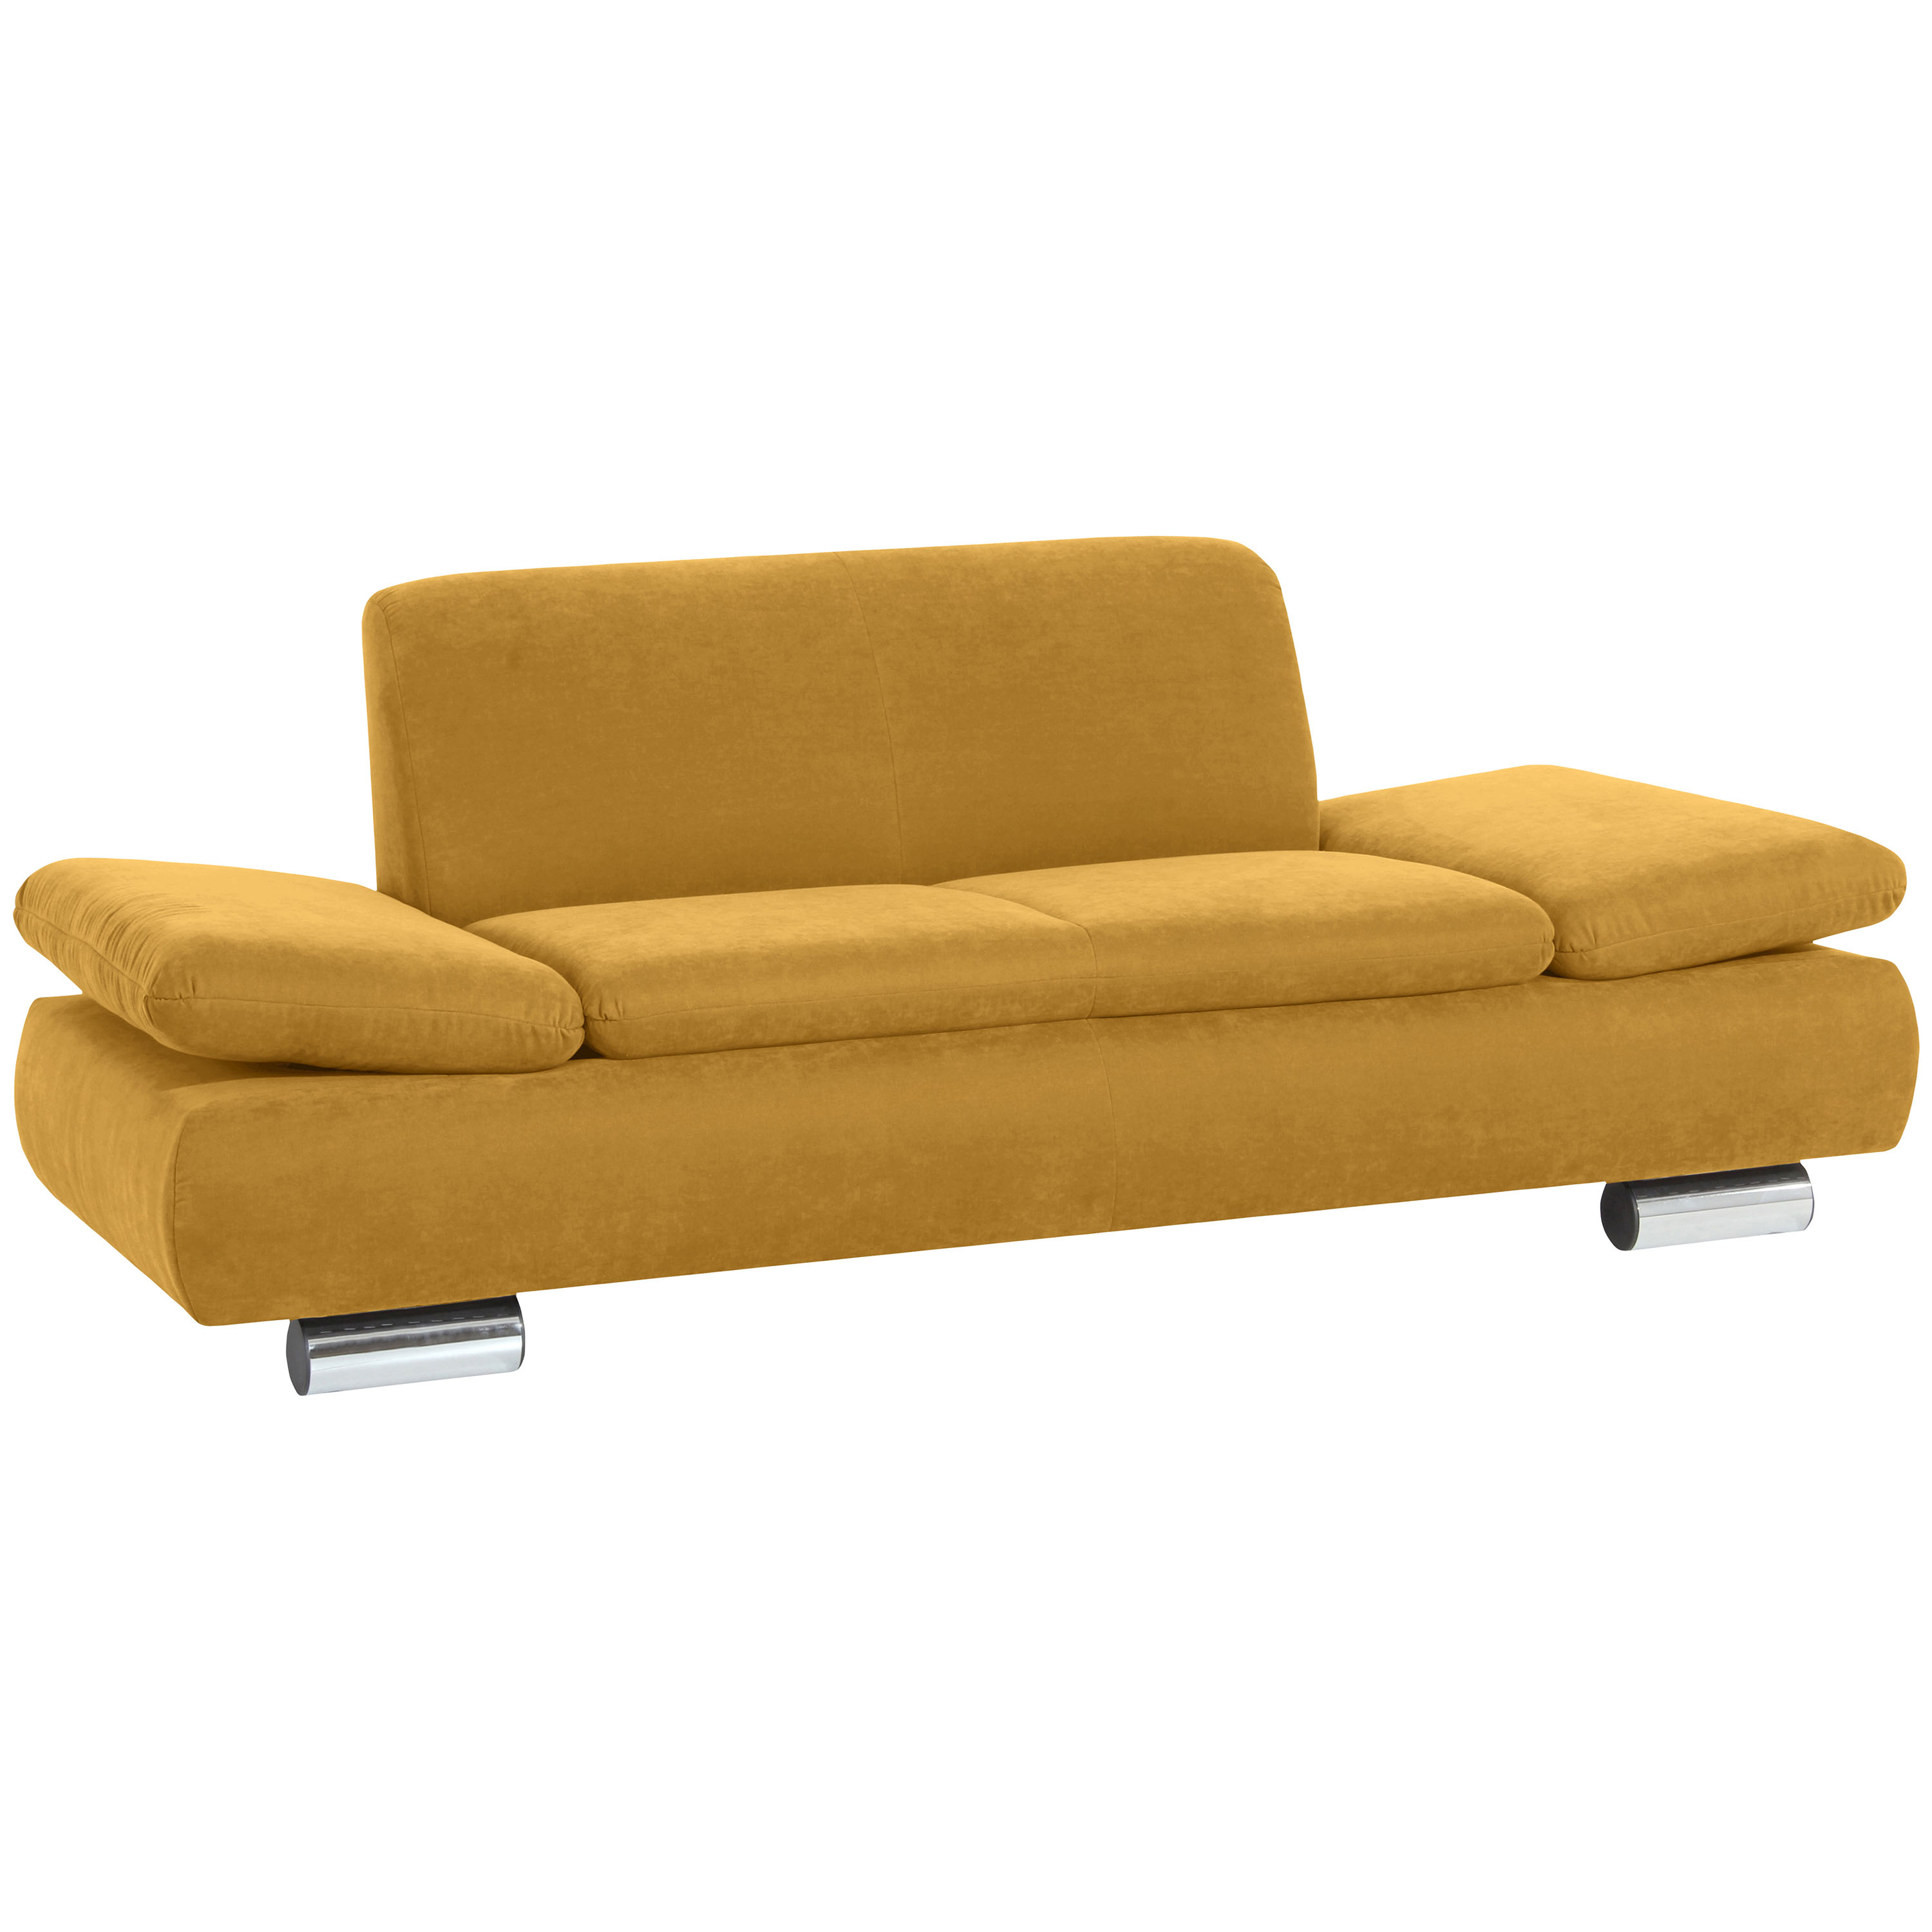 gemütliches 2-sitzer sofa im farbton mais mit verchromten metallfüssen